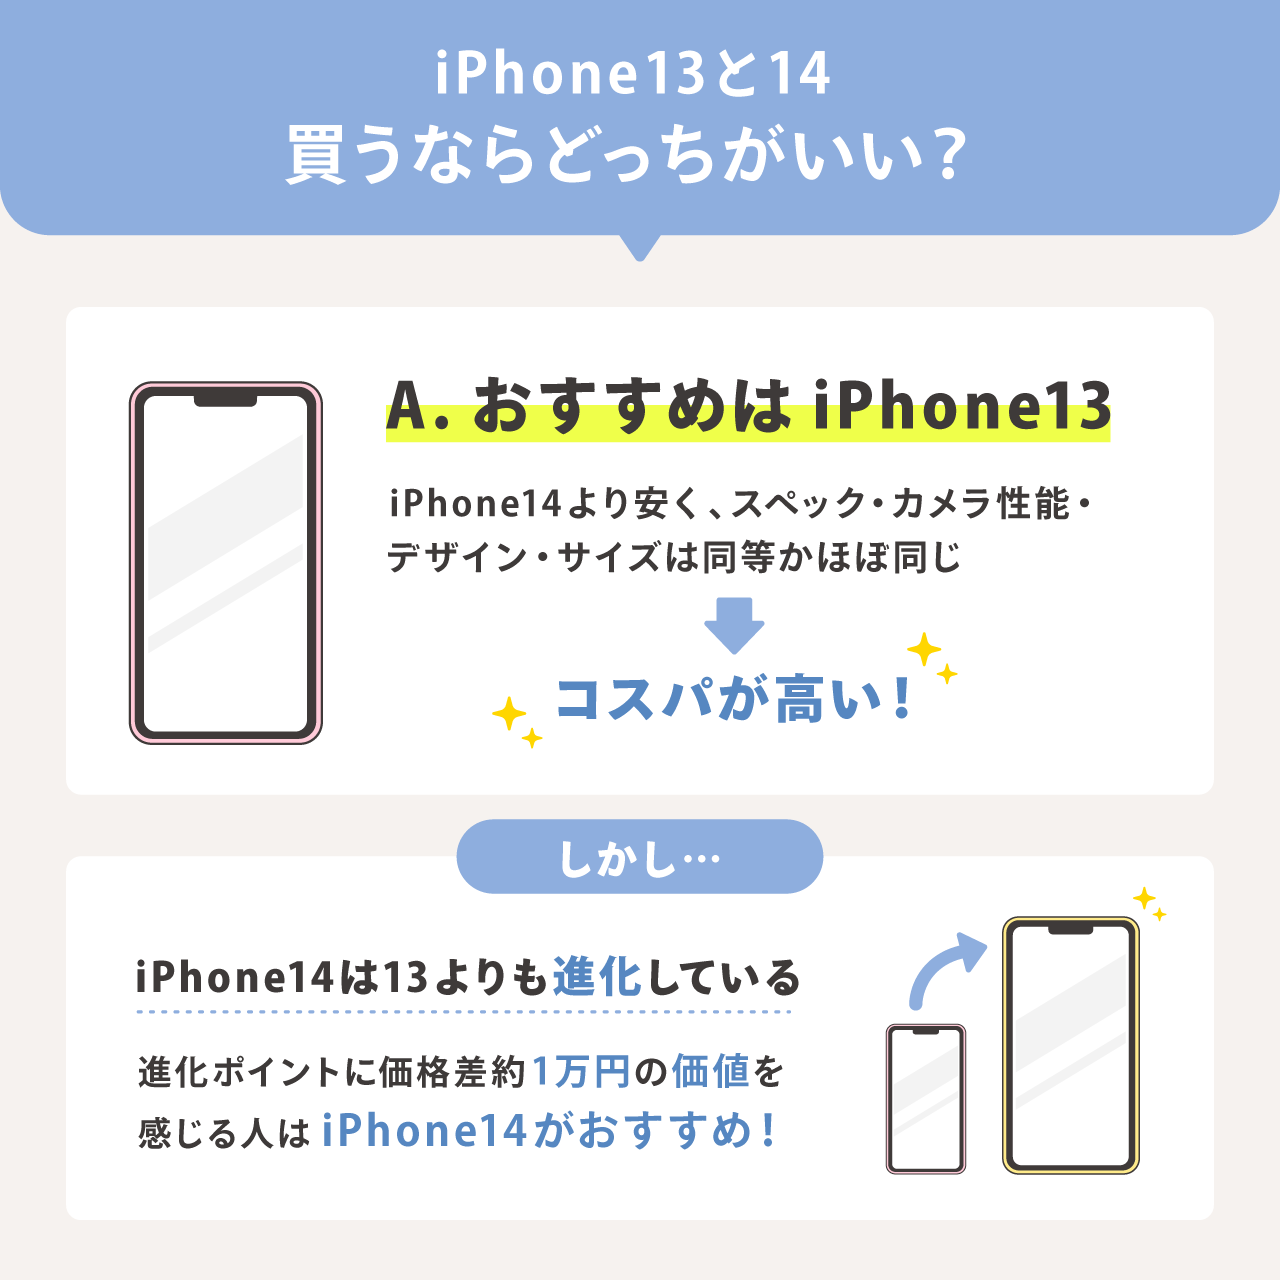 iPhone13とiPhone14を買うならどっちがいい？